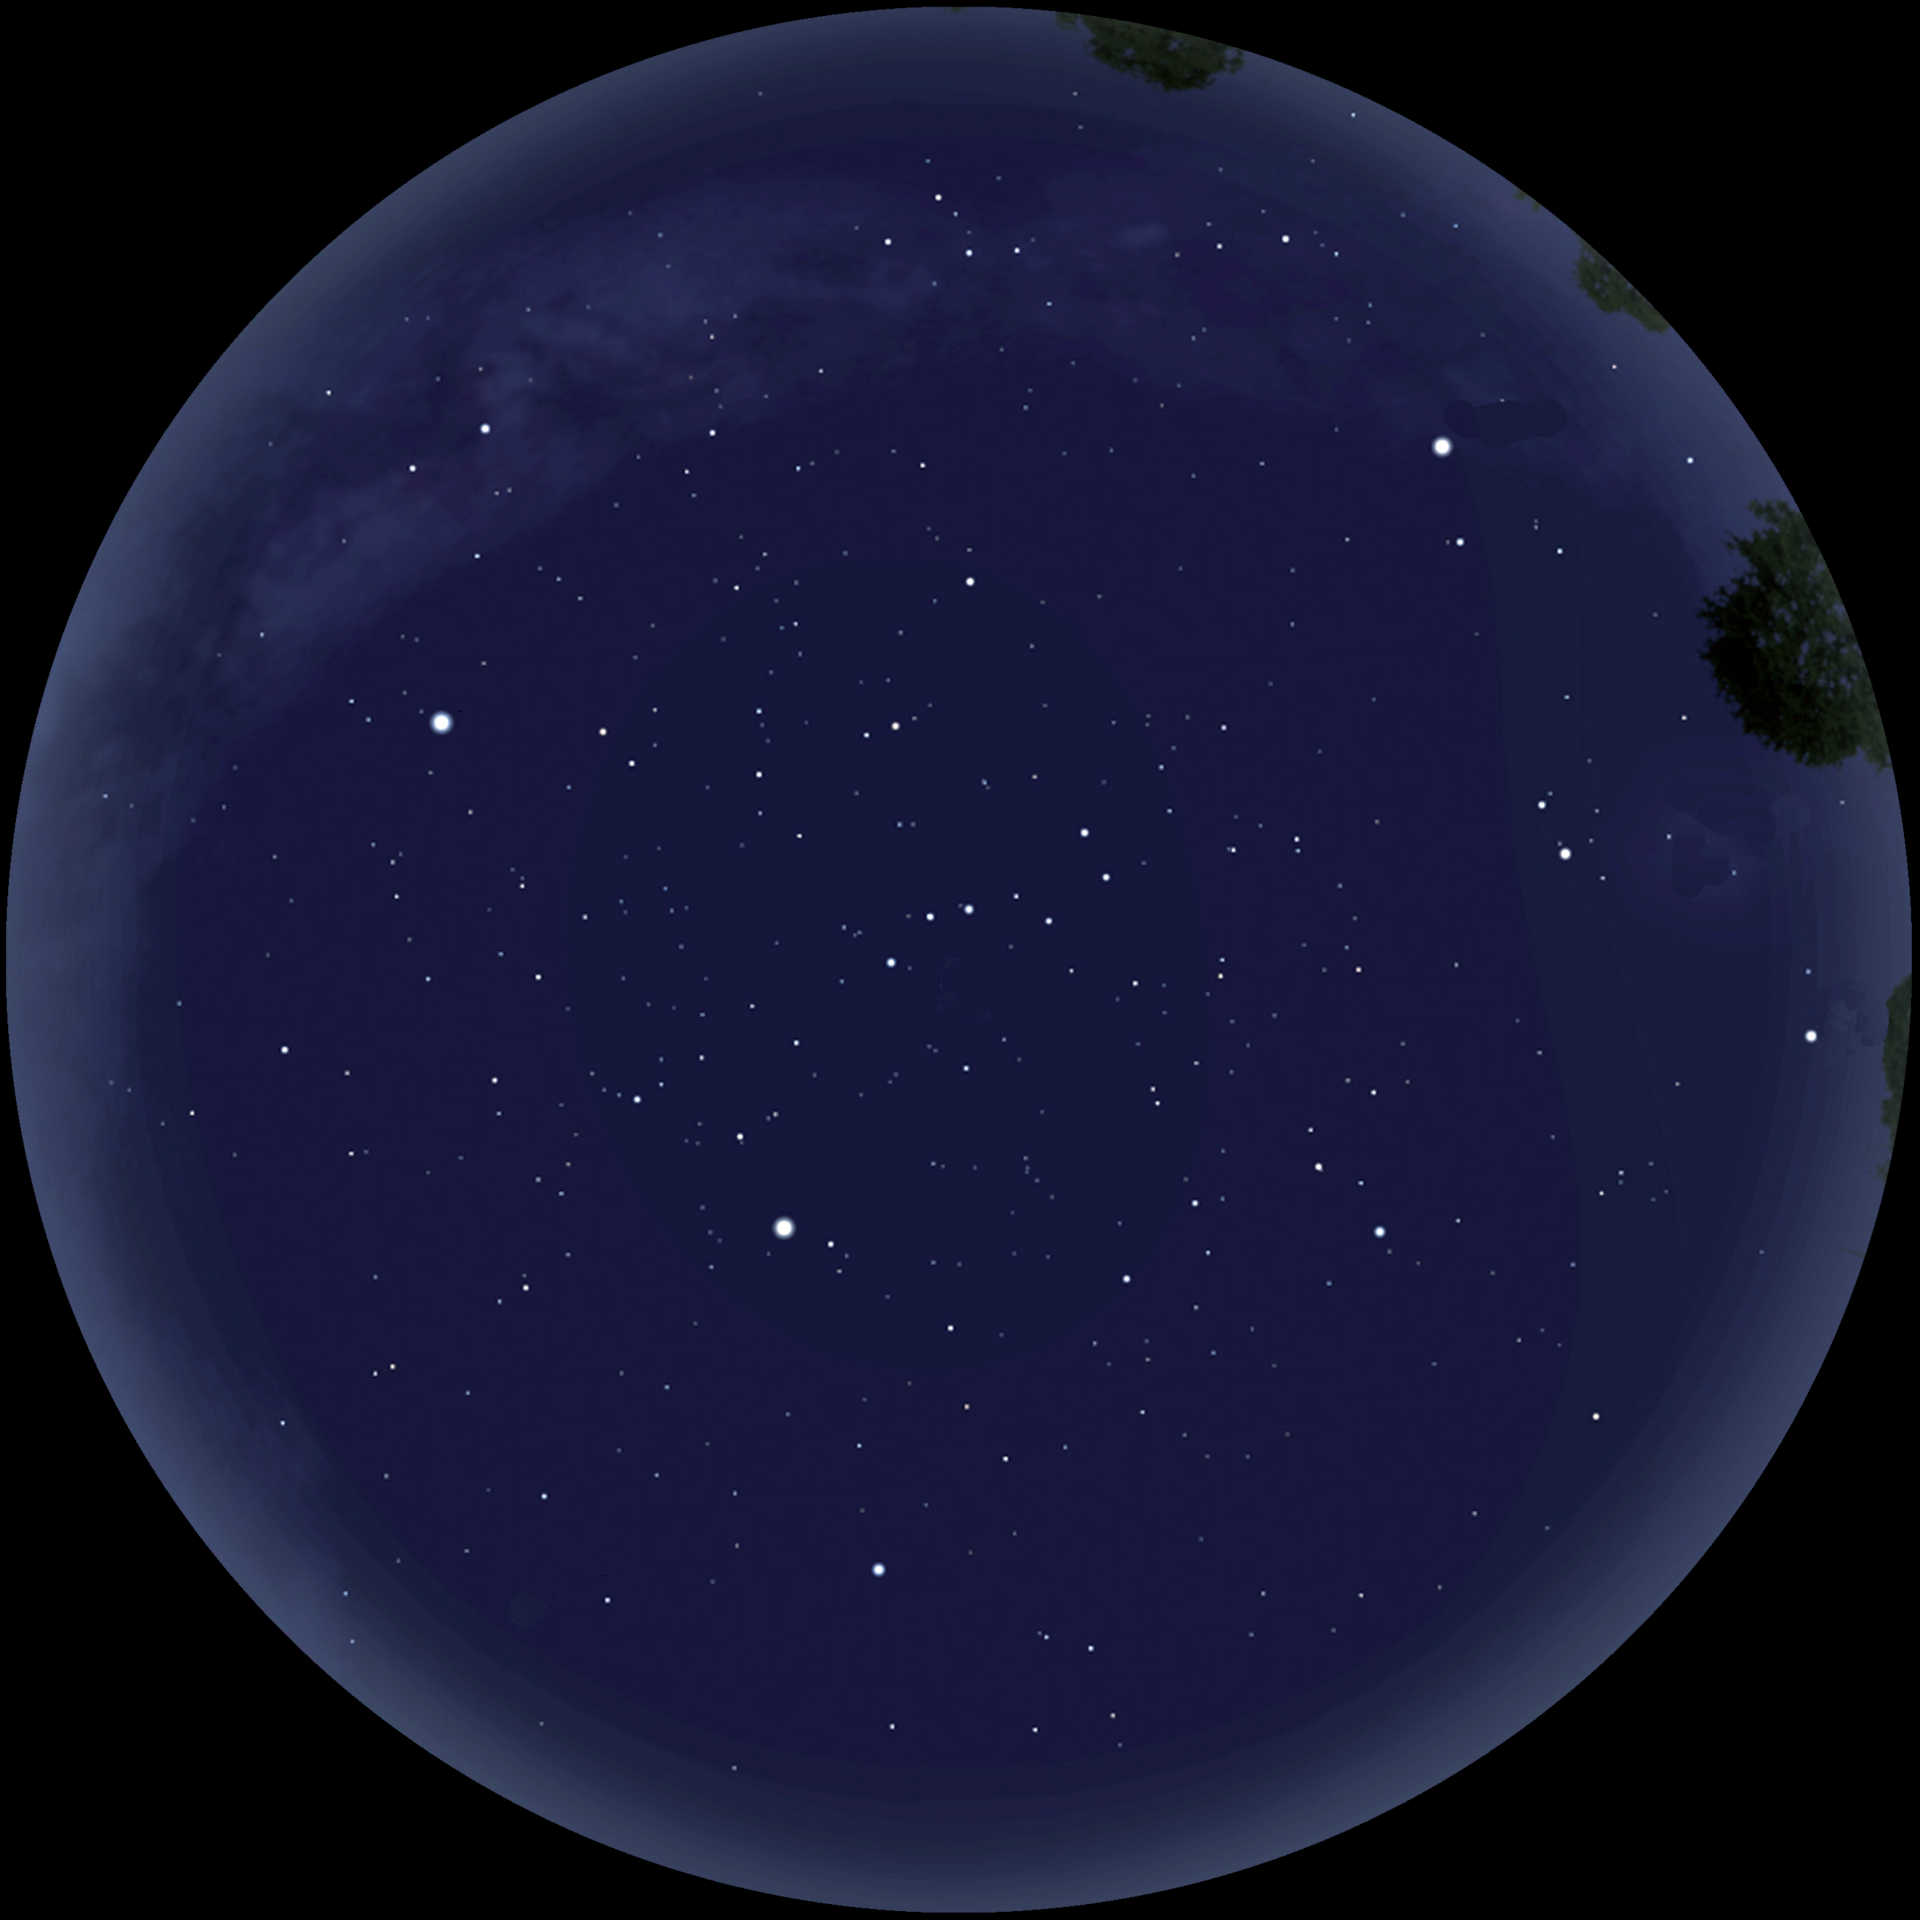 Le ciel nocturne de printemps en tant que panorama à 360°. Sans une navigation efficace, il est difficile de s’orienter. Stellarium